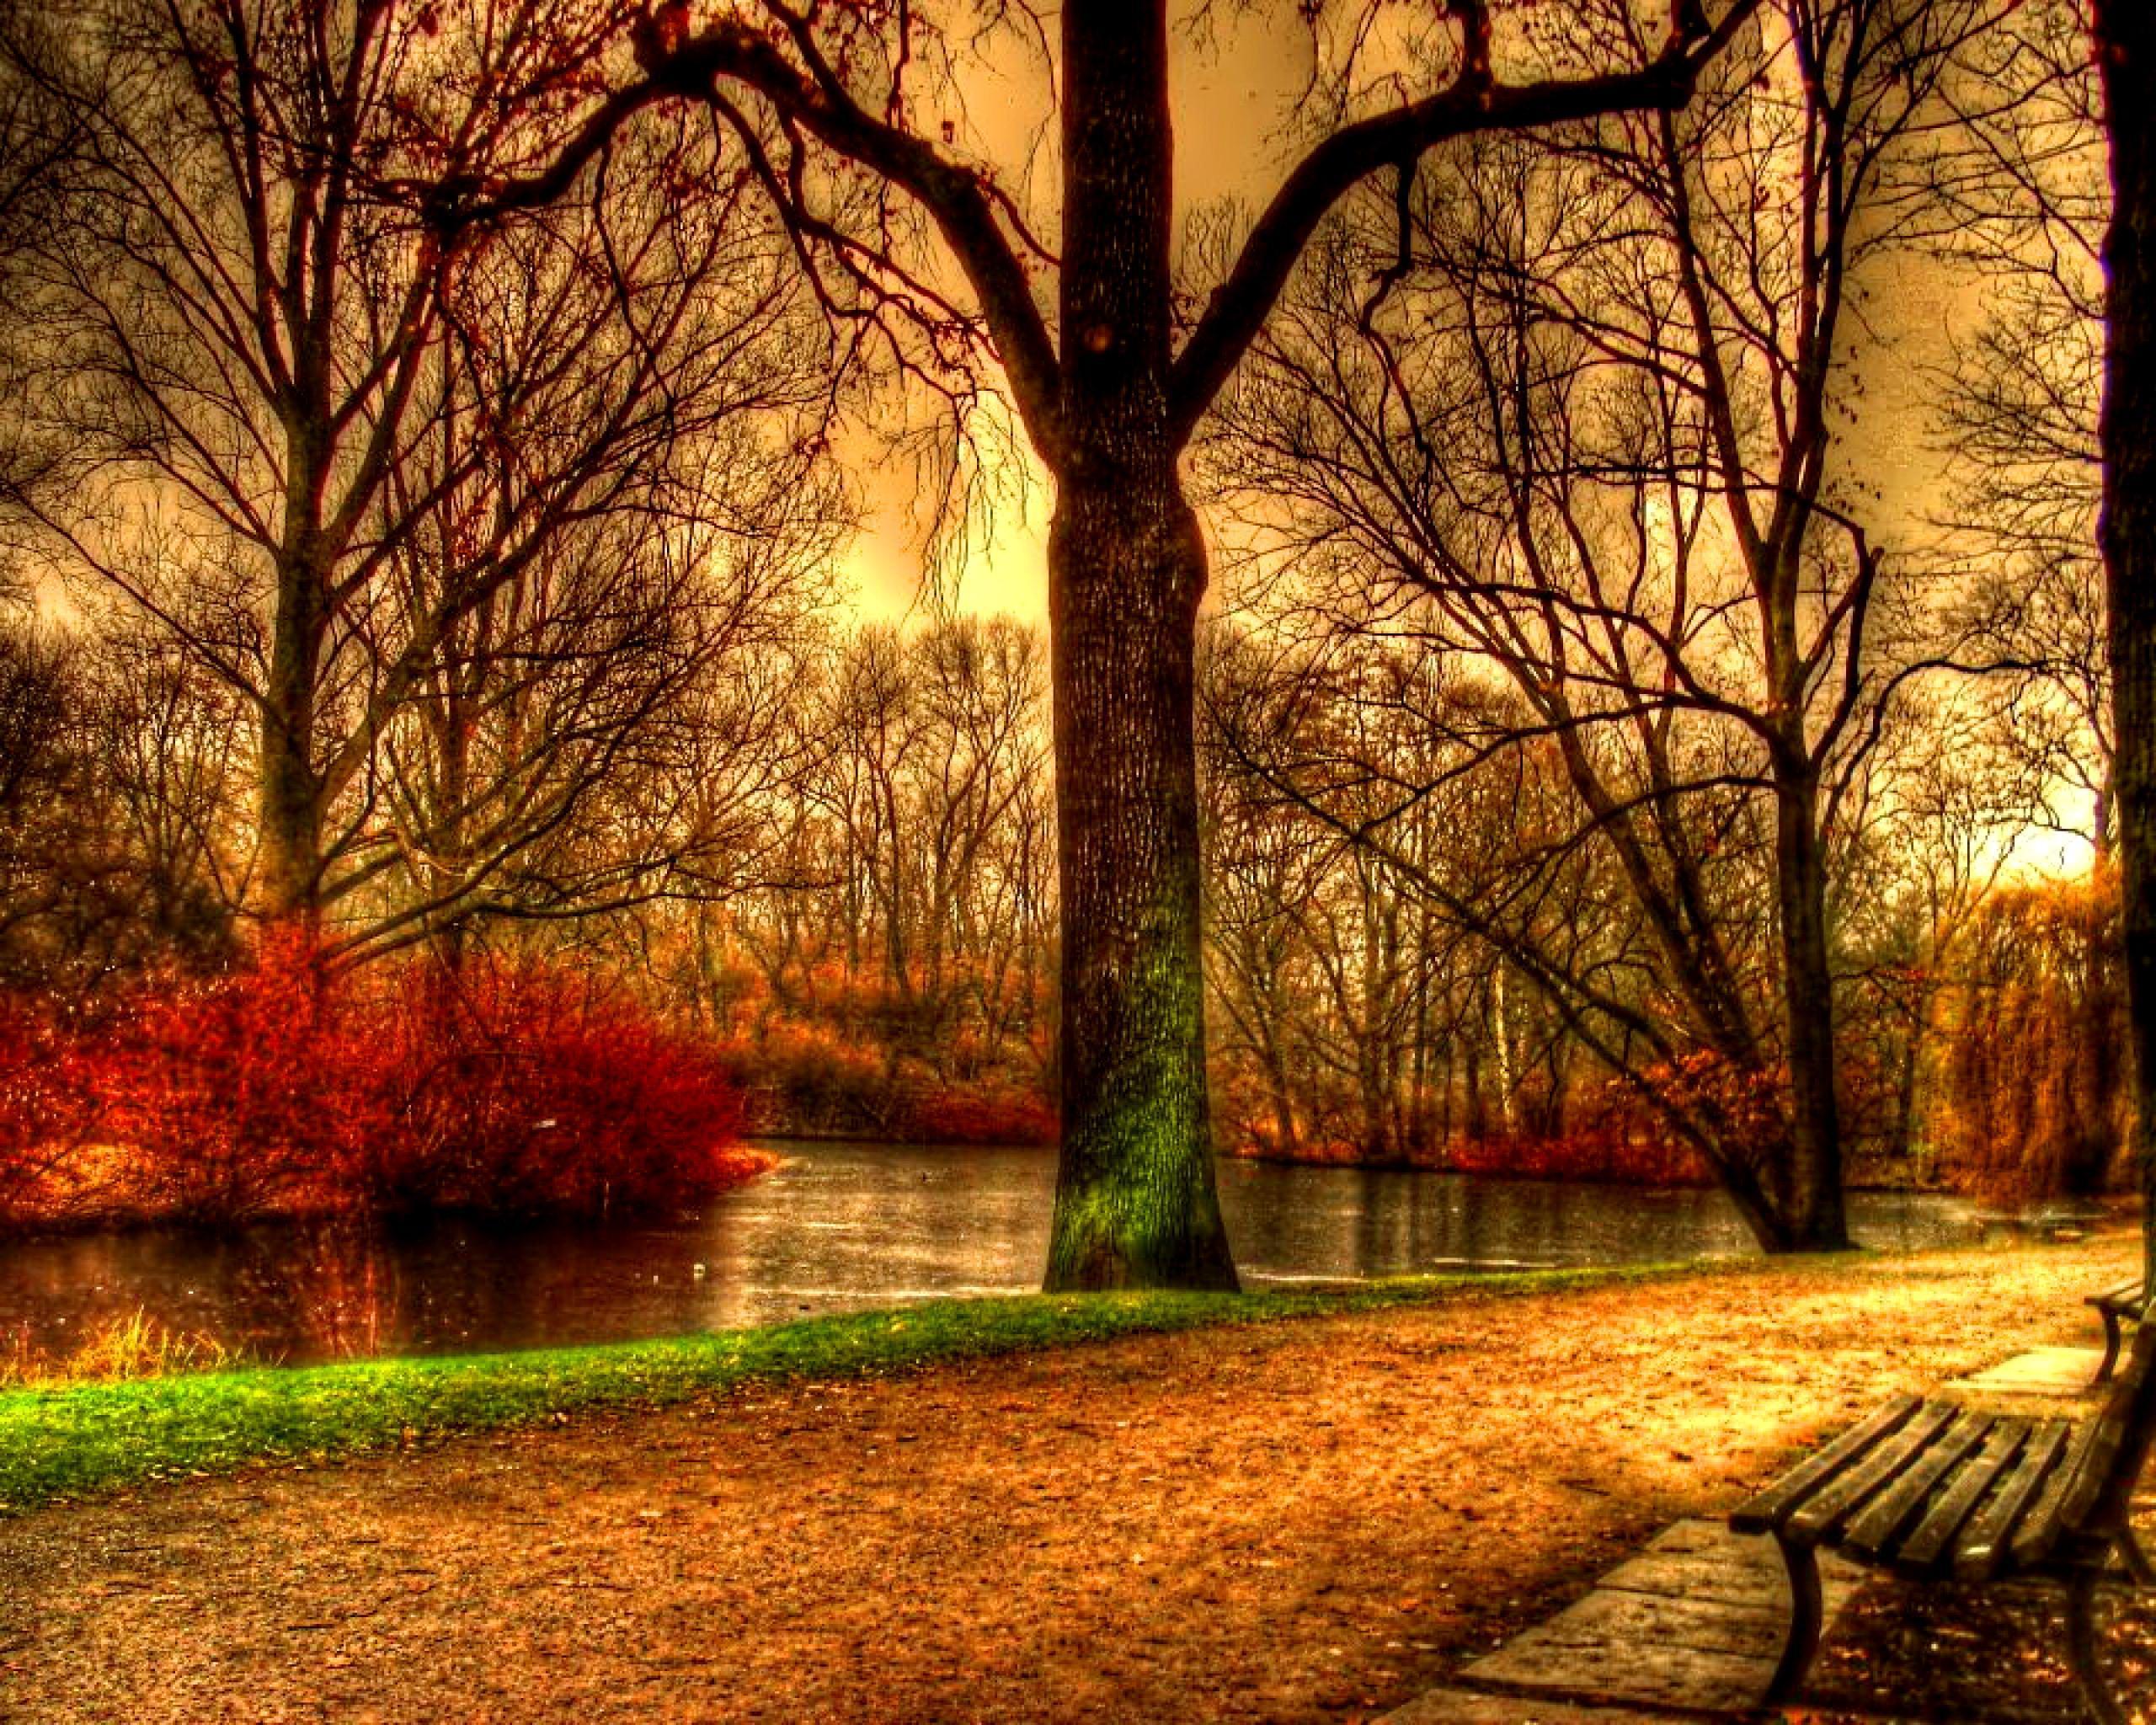 Germany Autumn HD desktop wallpaper, Widescreen, High Definition